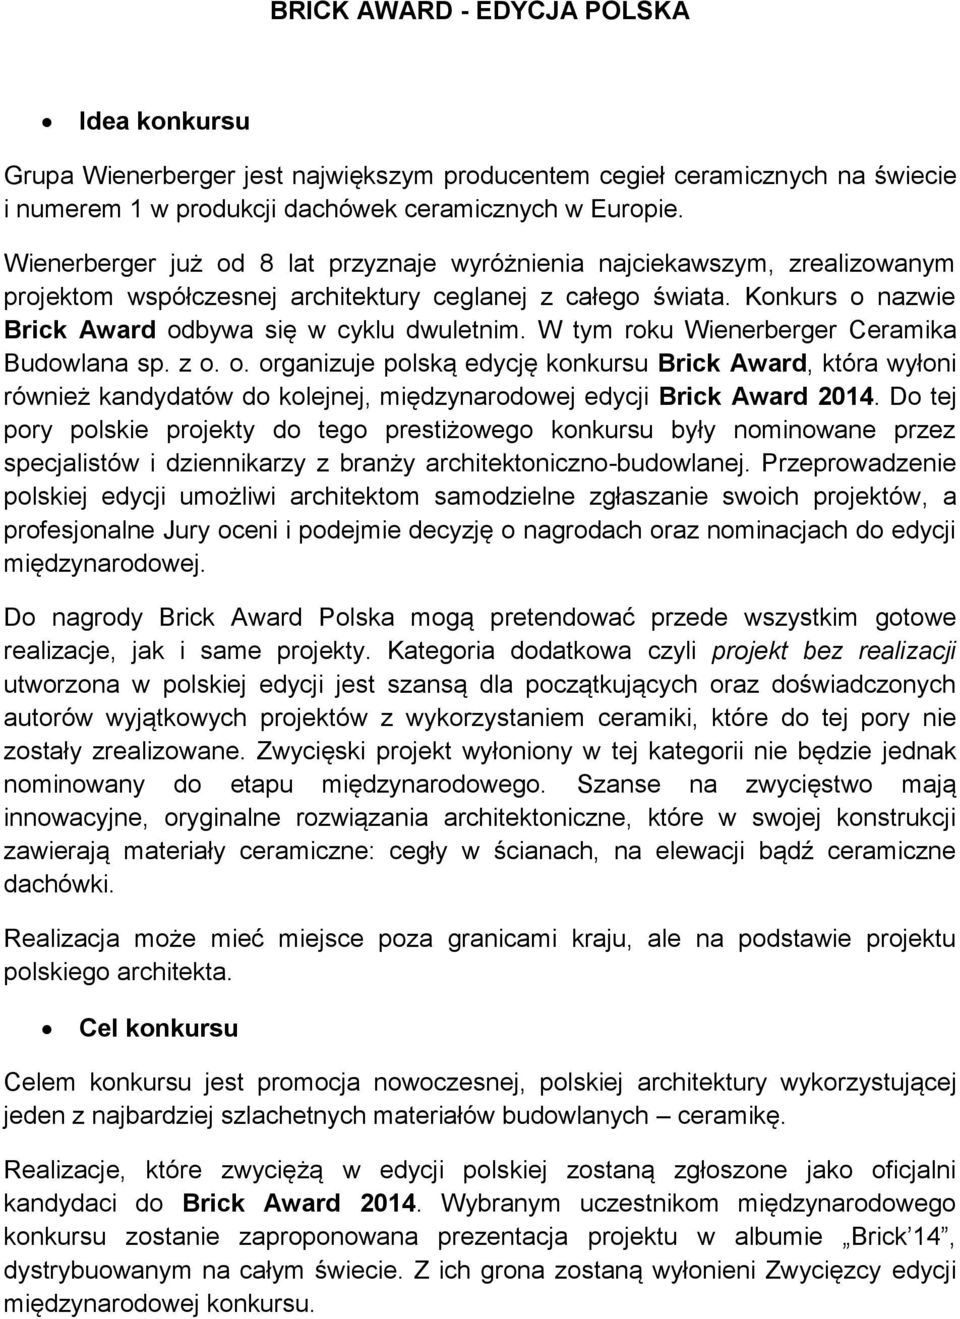 W tym roku Wienerberger Ceramika Budowlana sp. z o. o. organizuje polską edycję konkursu Brick Award, która wyłoni również kandydatów do kolejnej, międzynarodowej edycji Brick Award 2014.